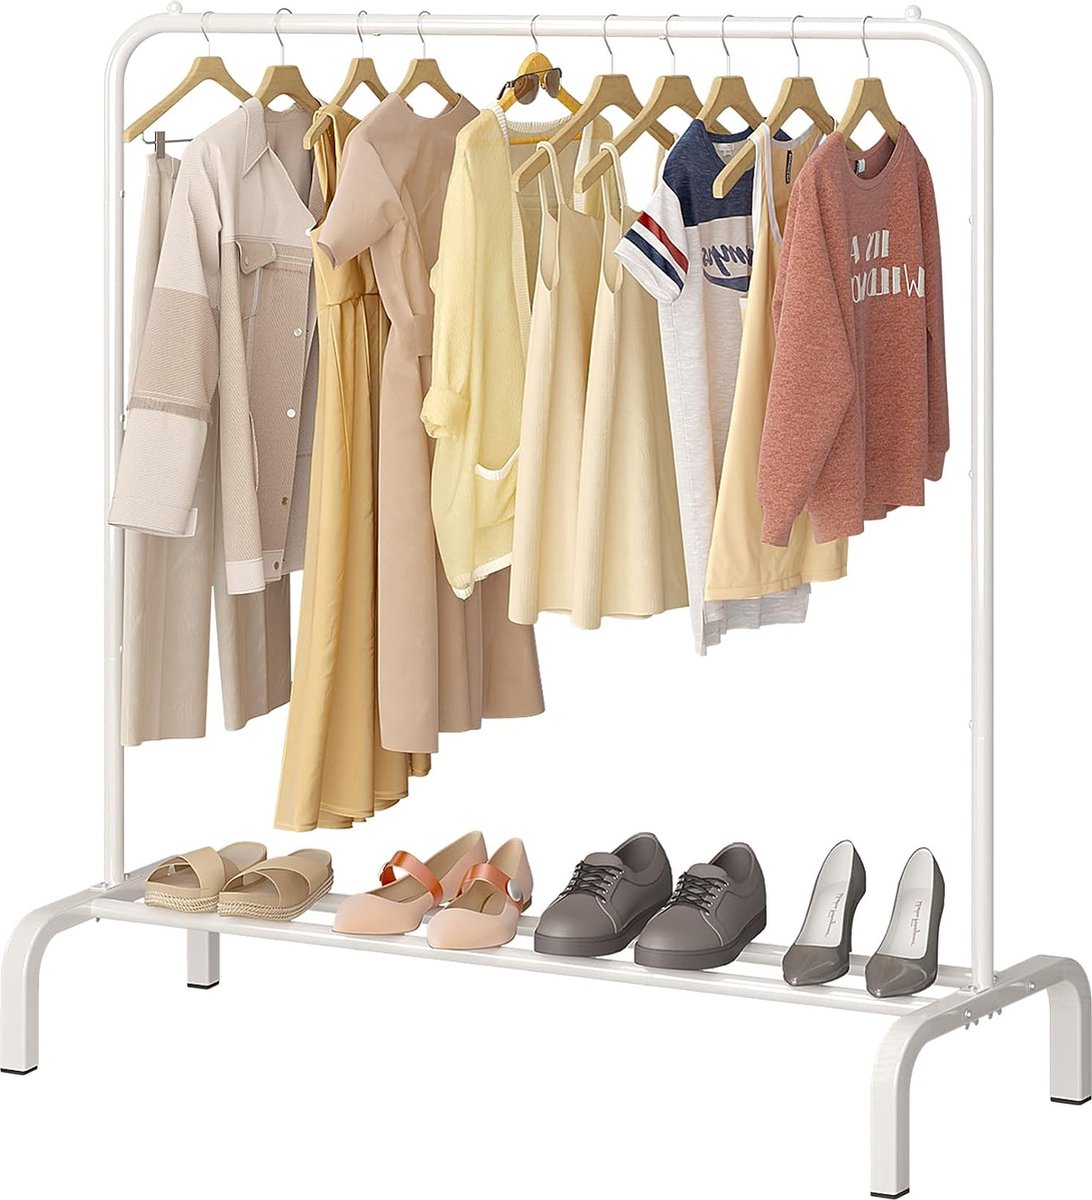 Kledingstang - 110 cm - metaal kledingstang, kledingstang met bodemrek voor jassen, rokken, overhemden, truien - wit